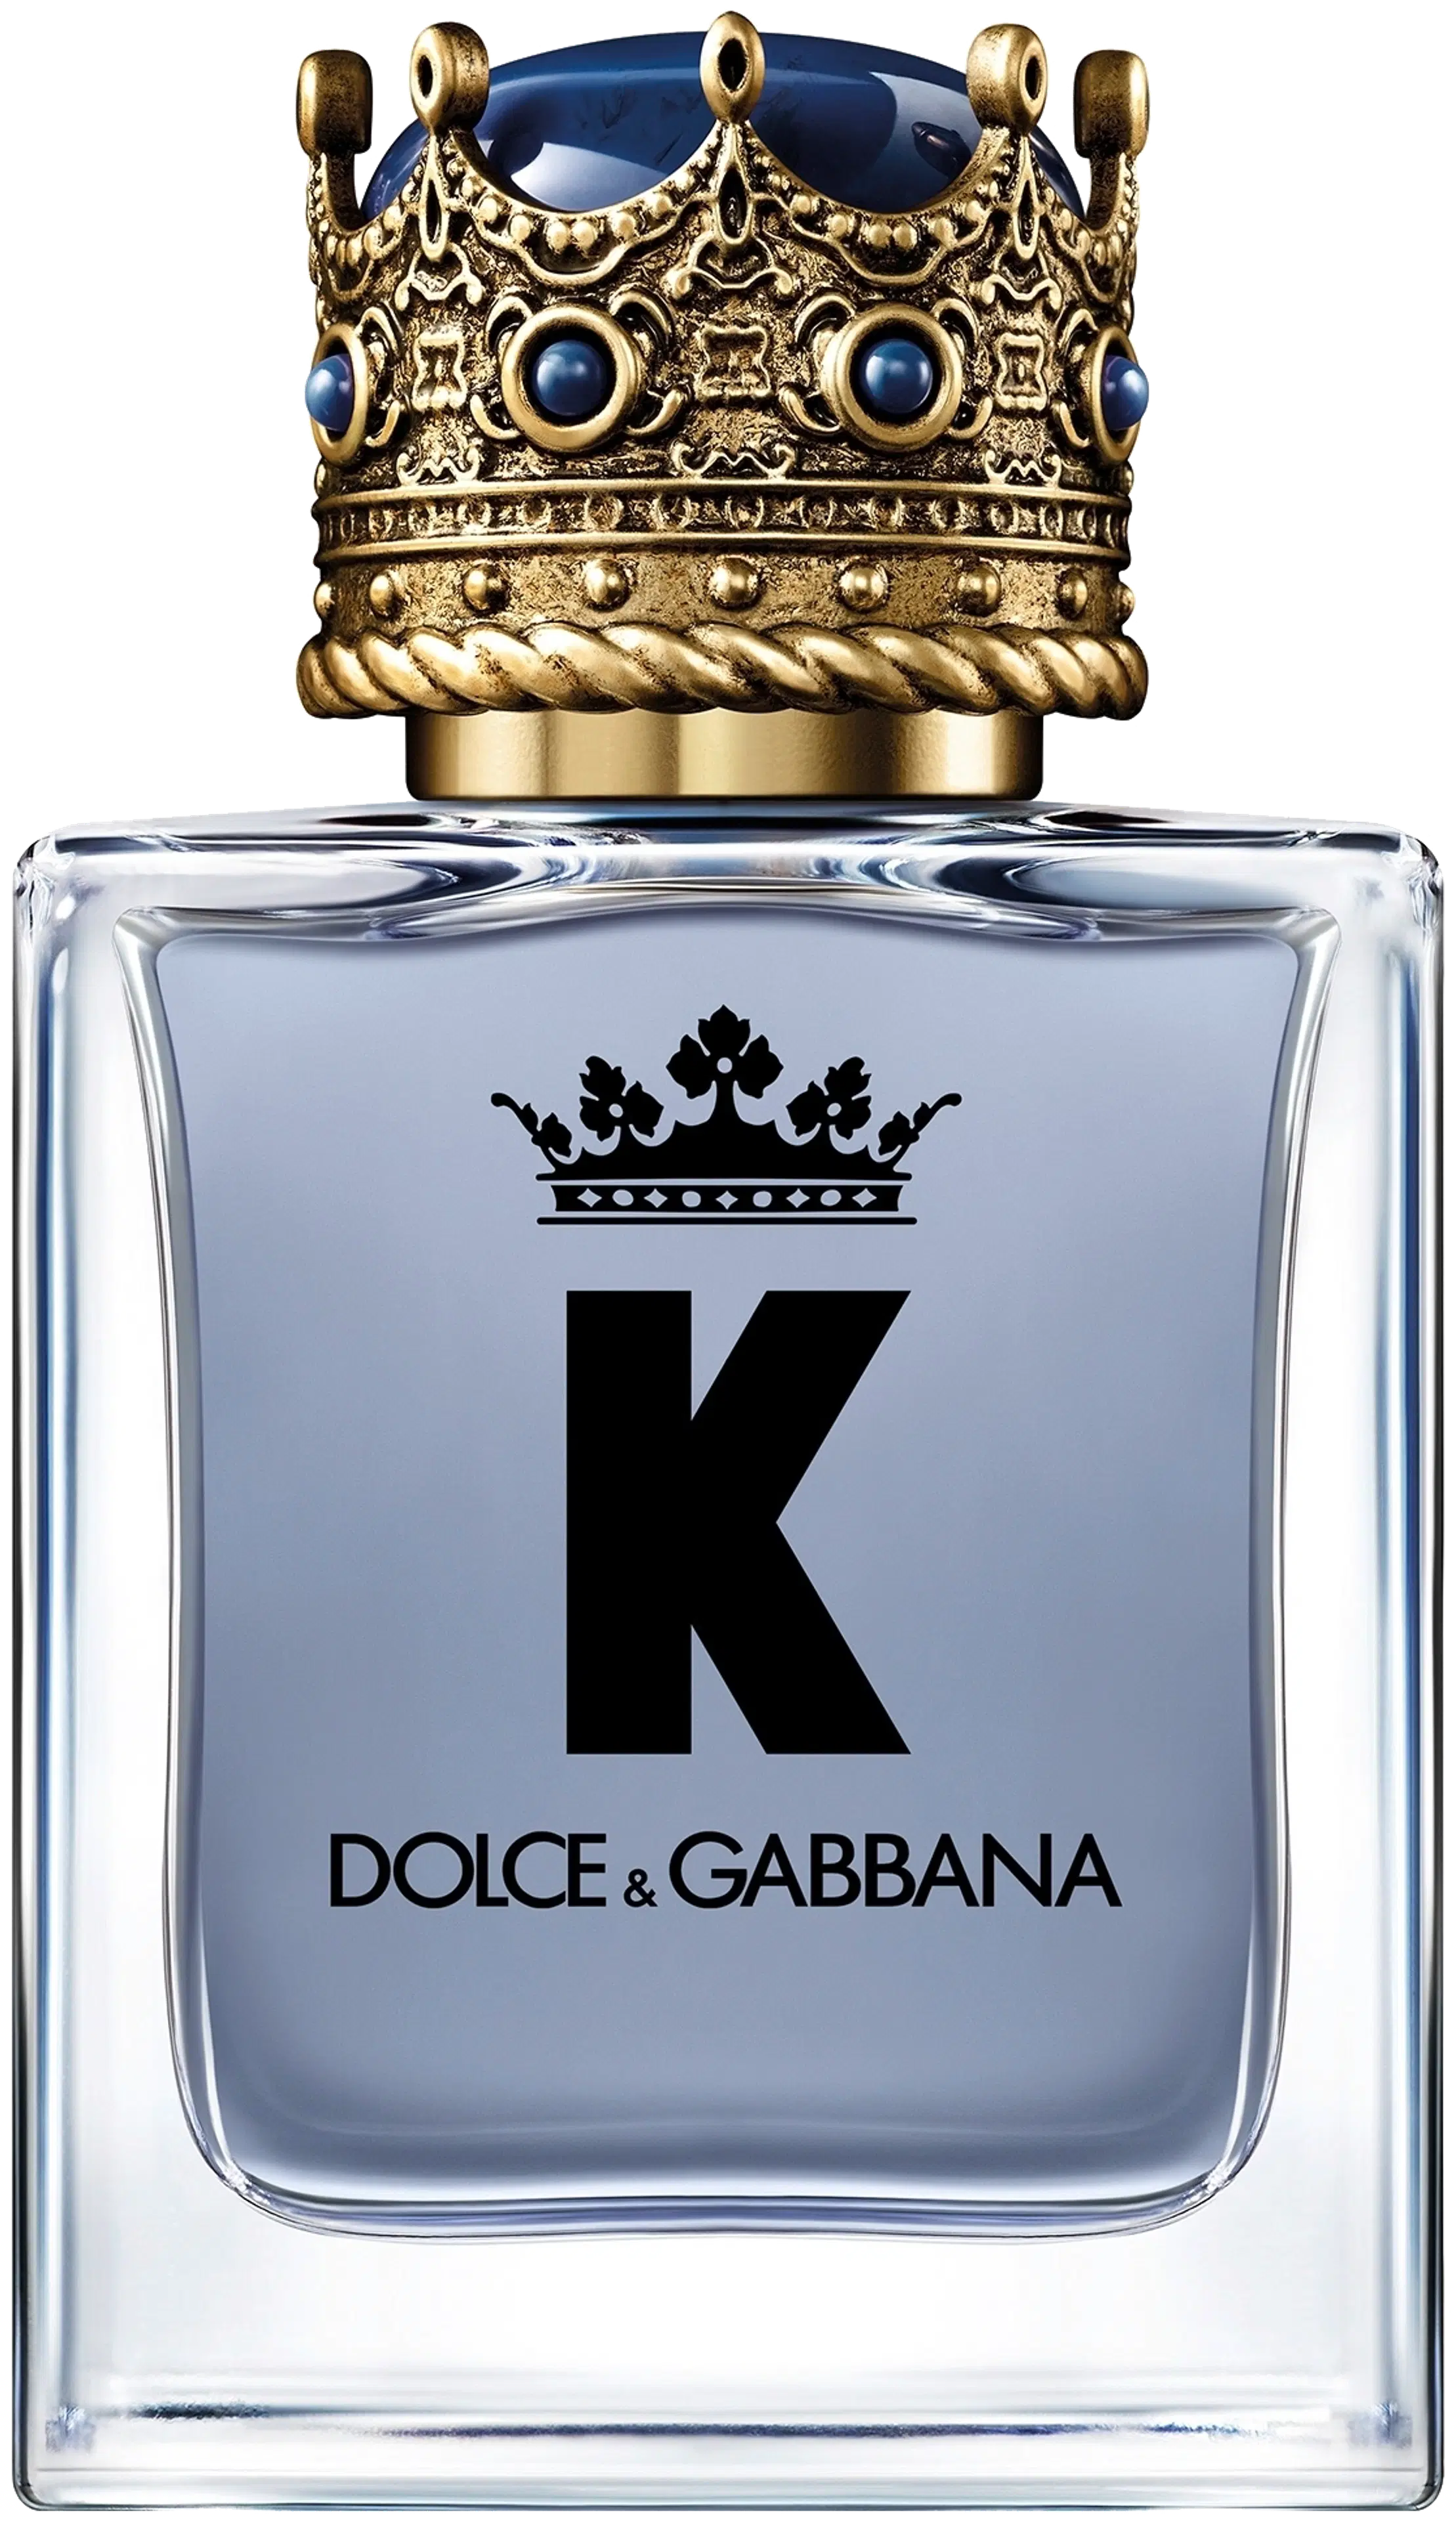 DOLCE & GABBANA K EdT tuoksu 50 ml